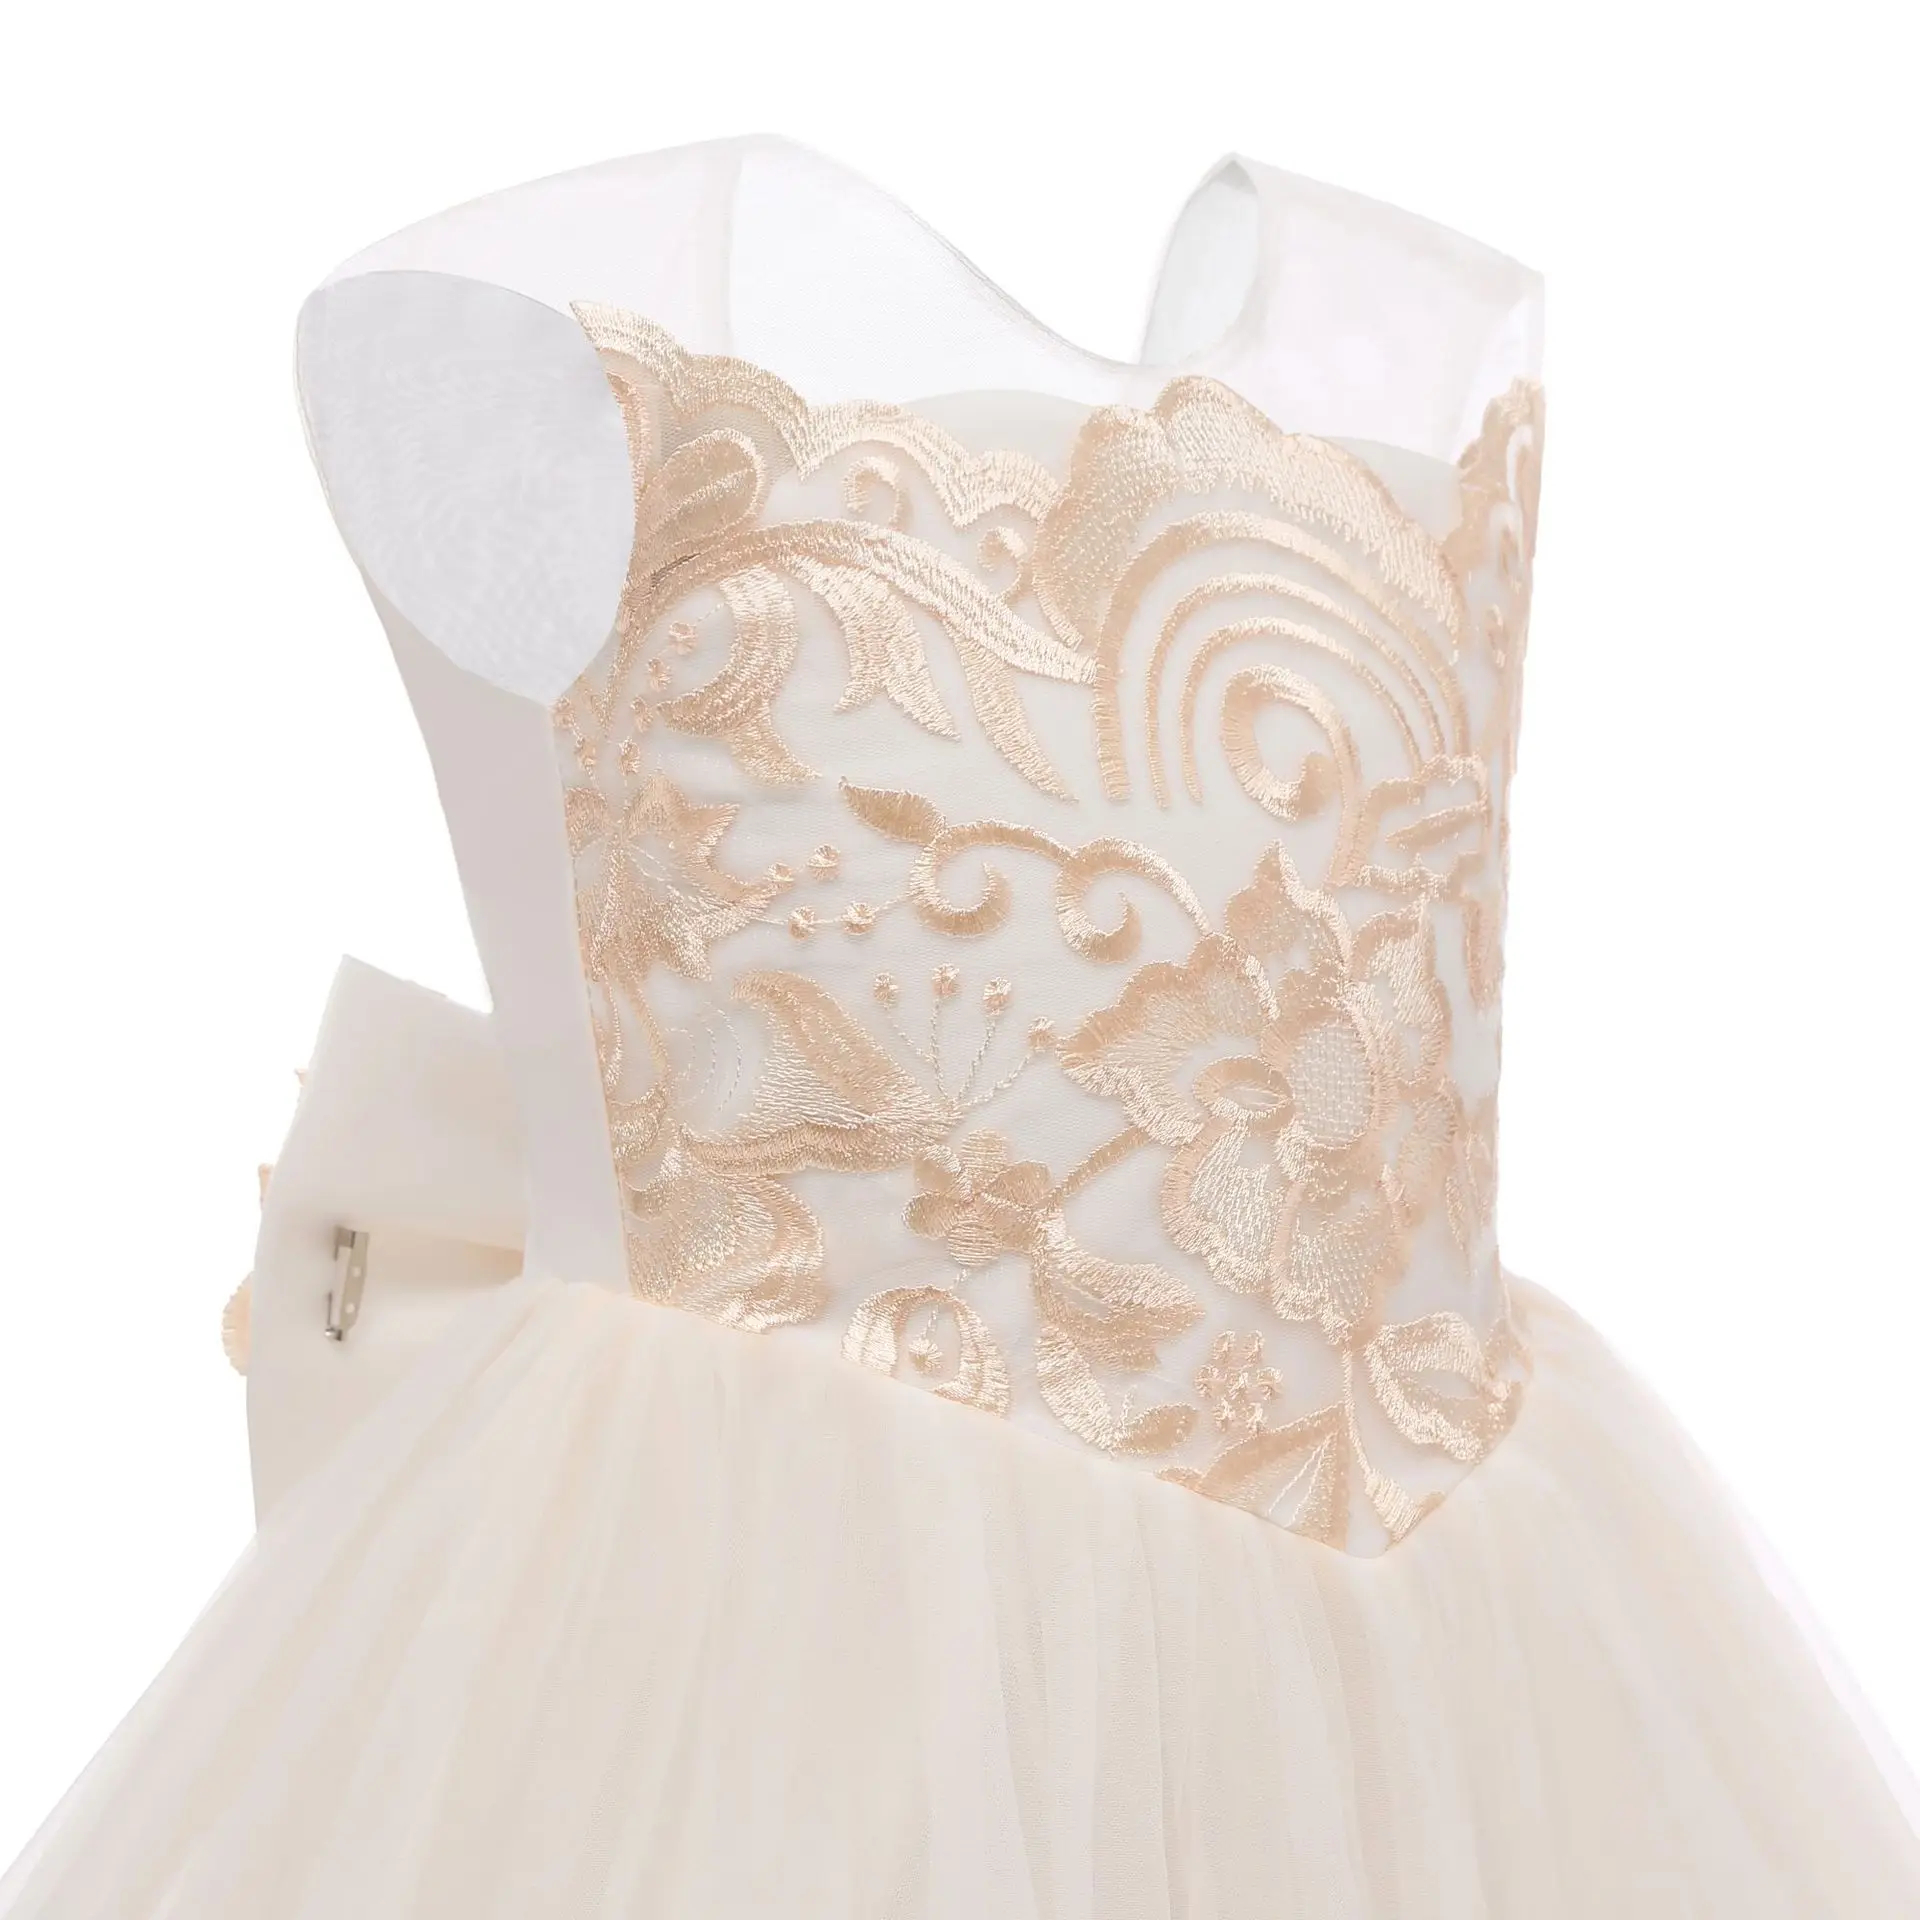 Лидер продаж, официальное кружевное платье со шлейфом на день рождения для девочек, красивое свадебное платье с цветами для девочек, платье принцессы